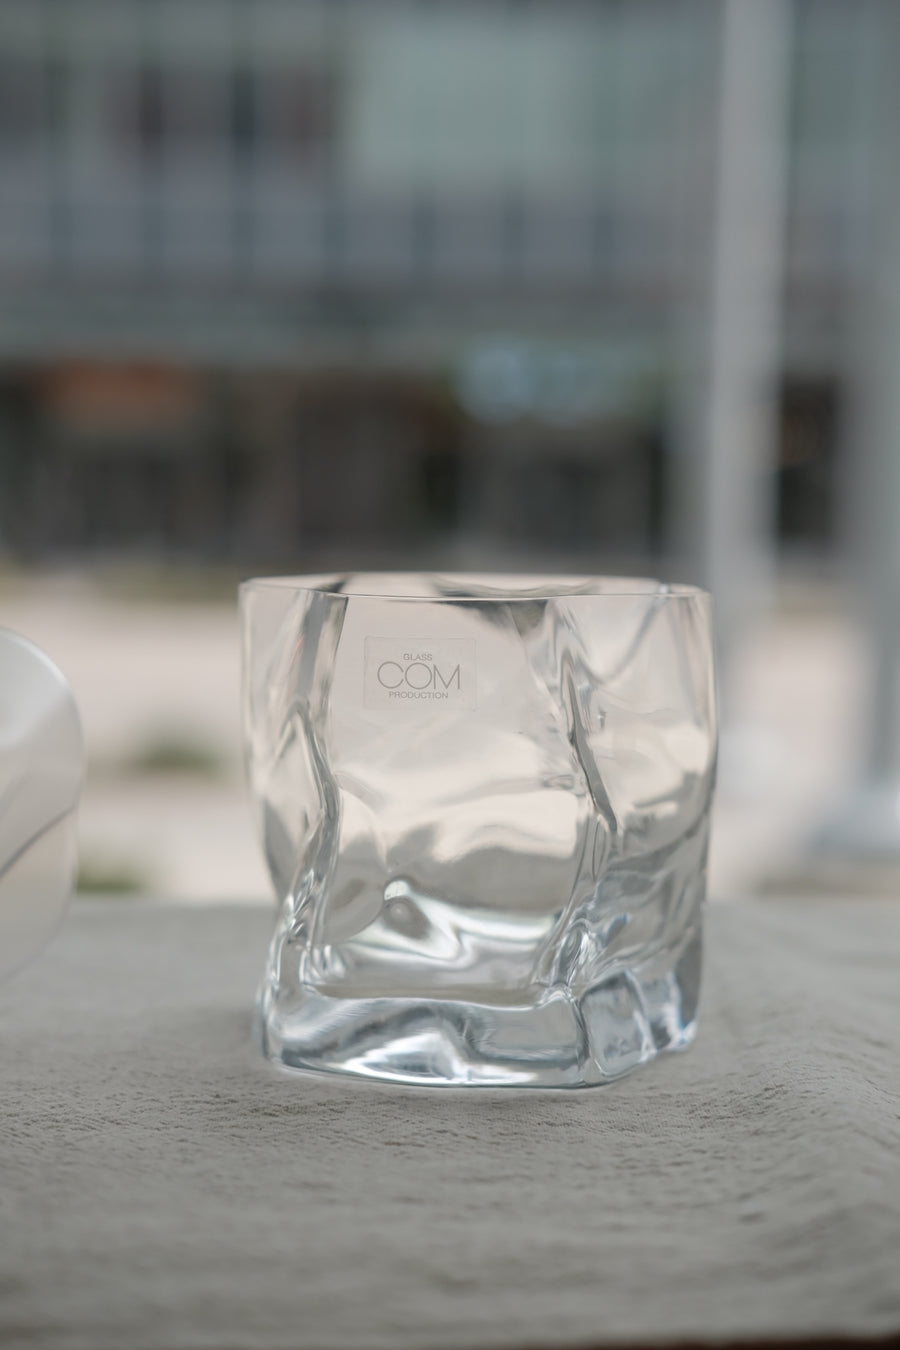 小松诚设计日本褶皱玻璃水杯